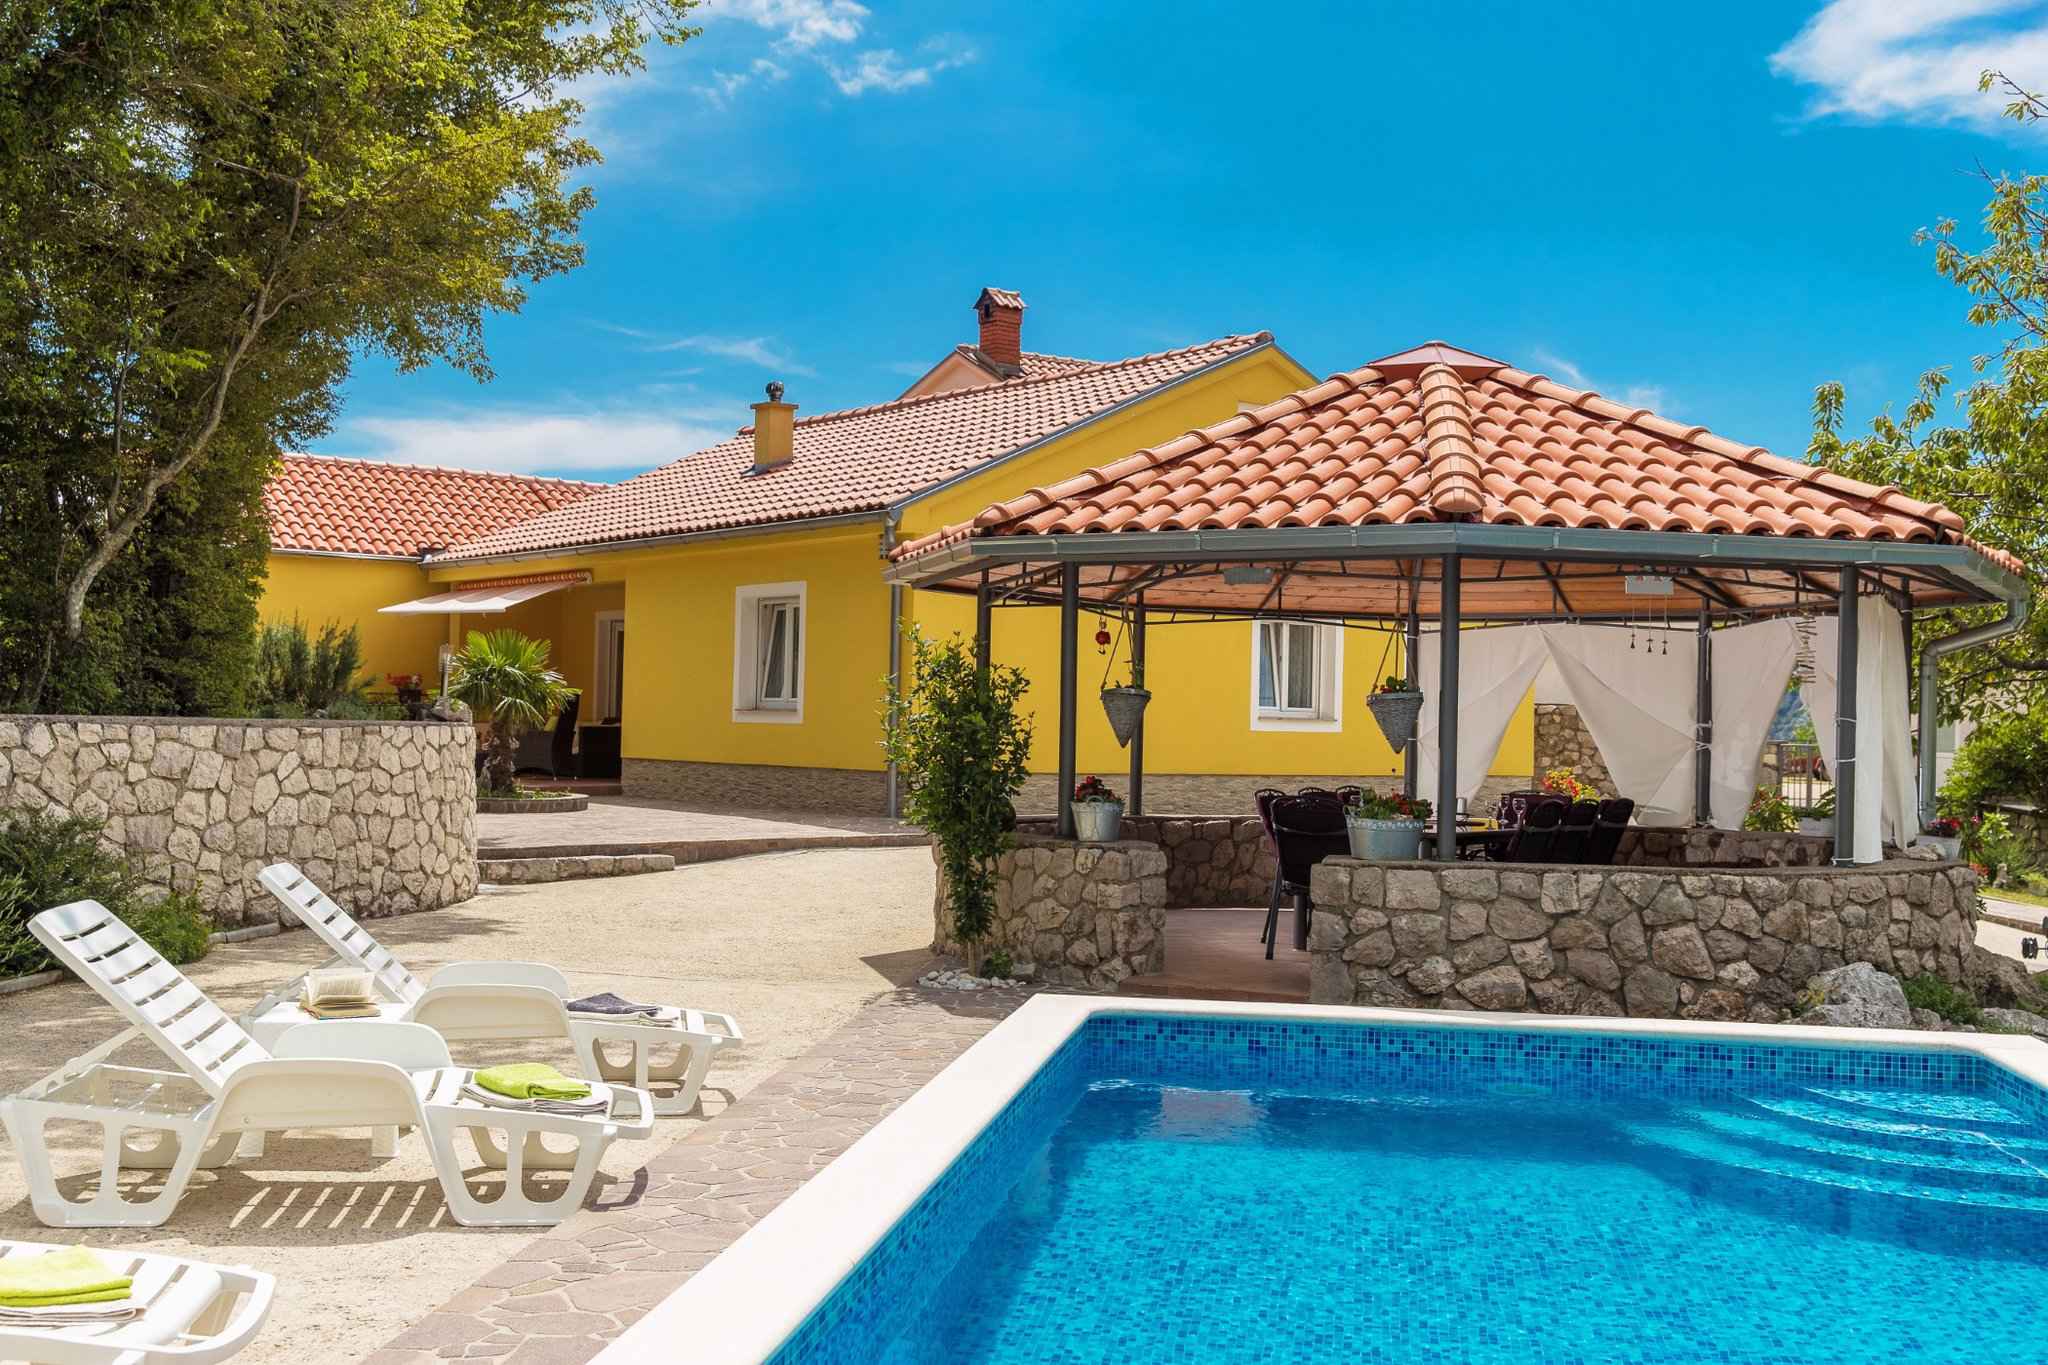 Ferienhaus mit Pool, WLAN und Garage  in Kroatien